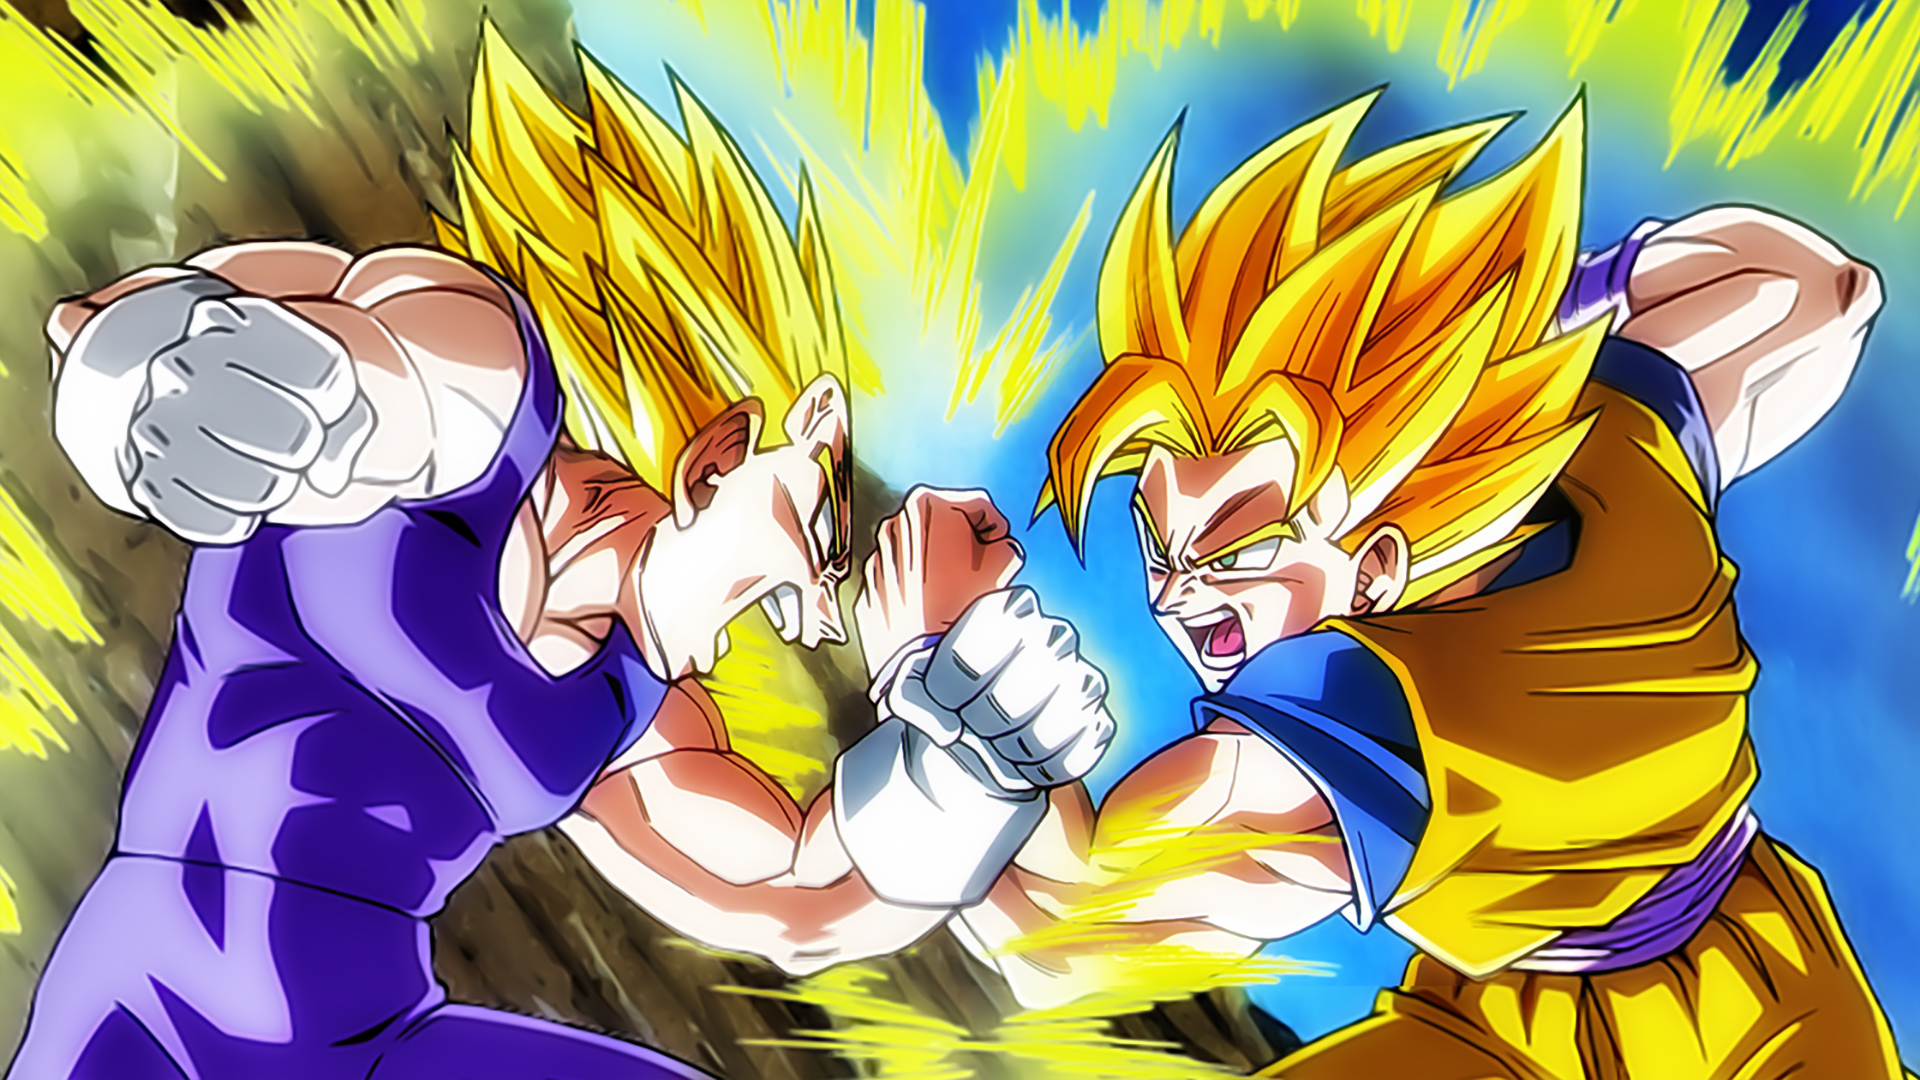 Akira Toriyama revelou sua versão de Goku transformado em Super